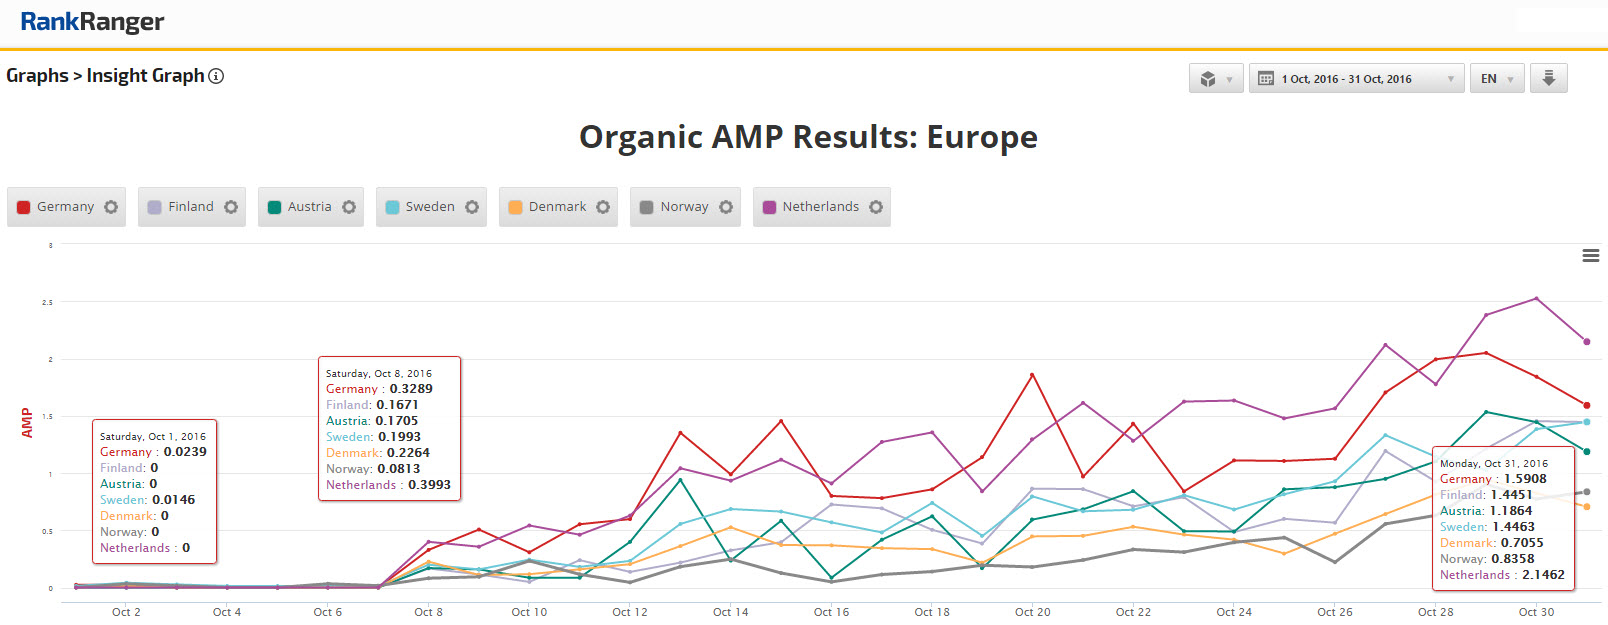 Organik AMP Sonuçları - Avrupa 